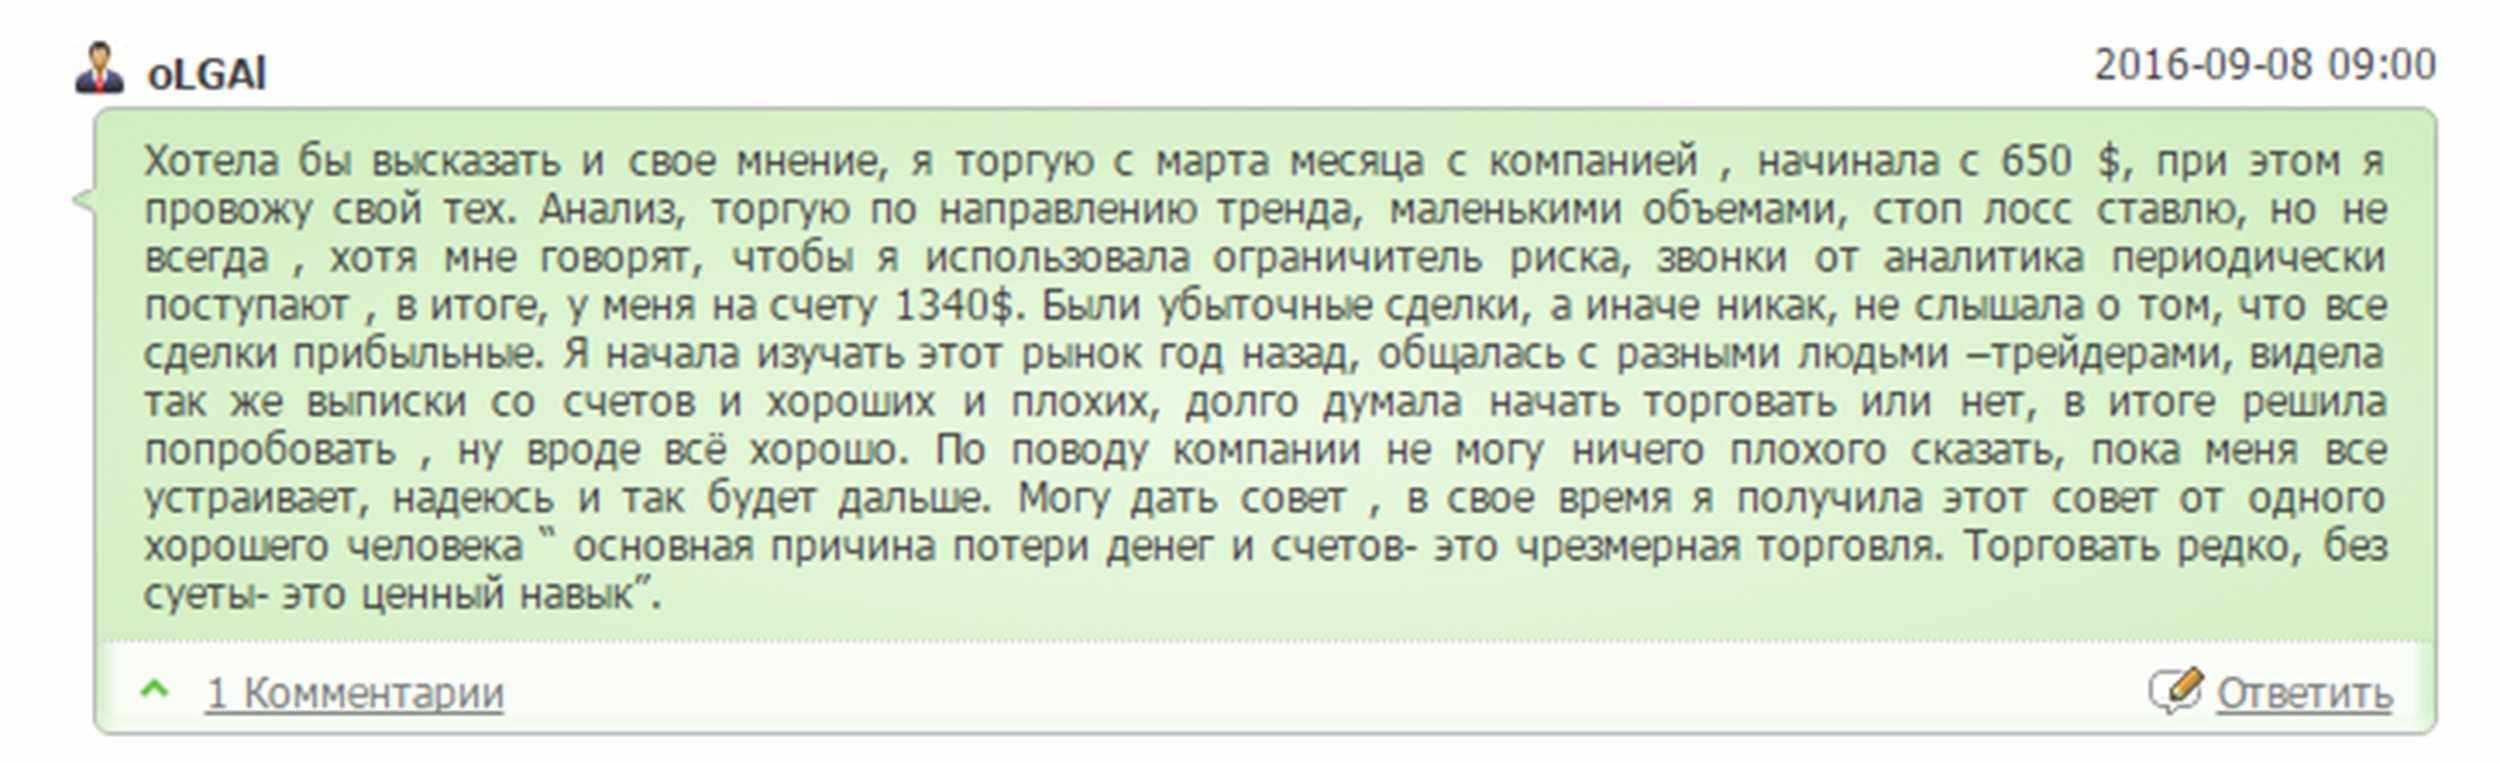 Отзывы с форума traders-union.ru о финам